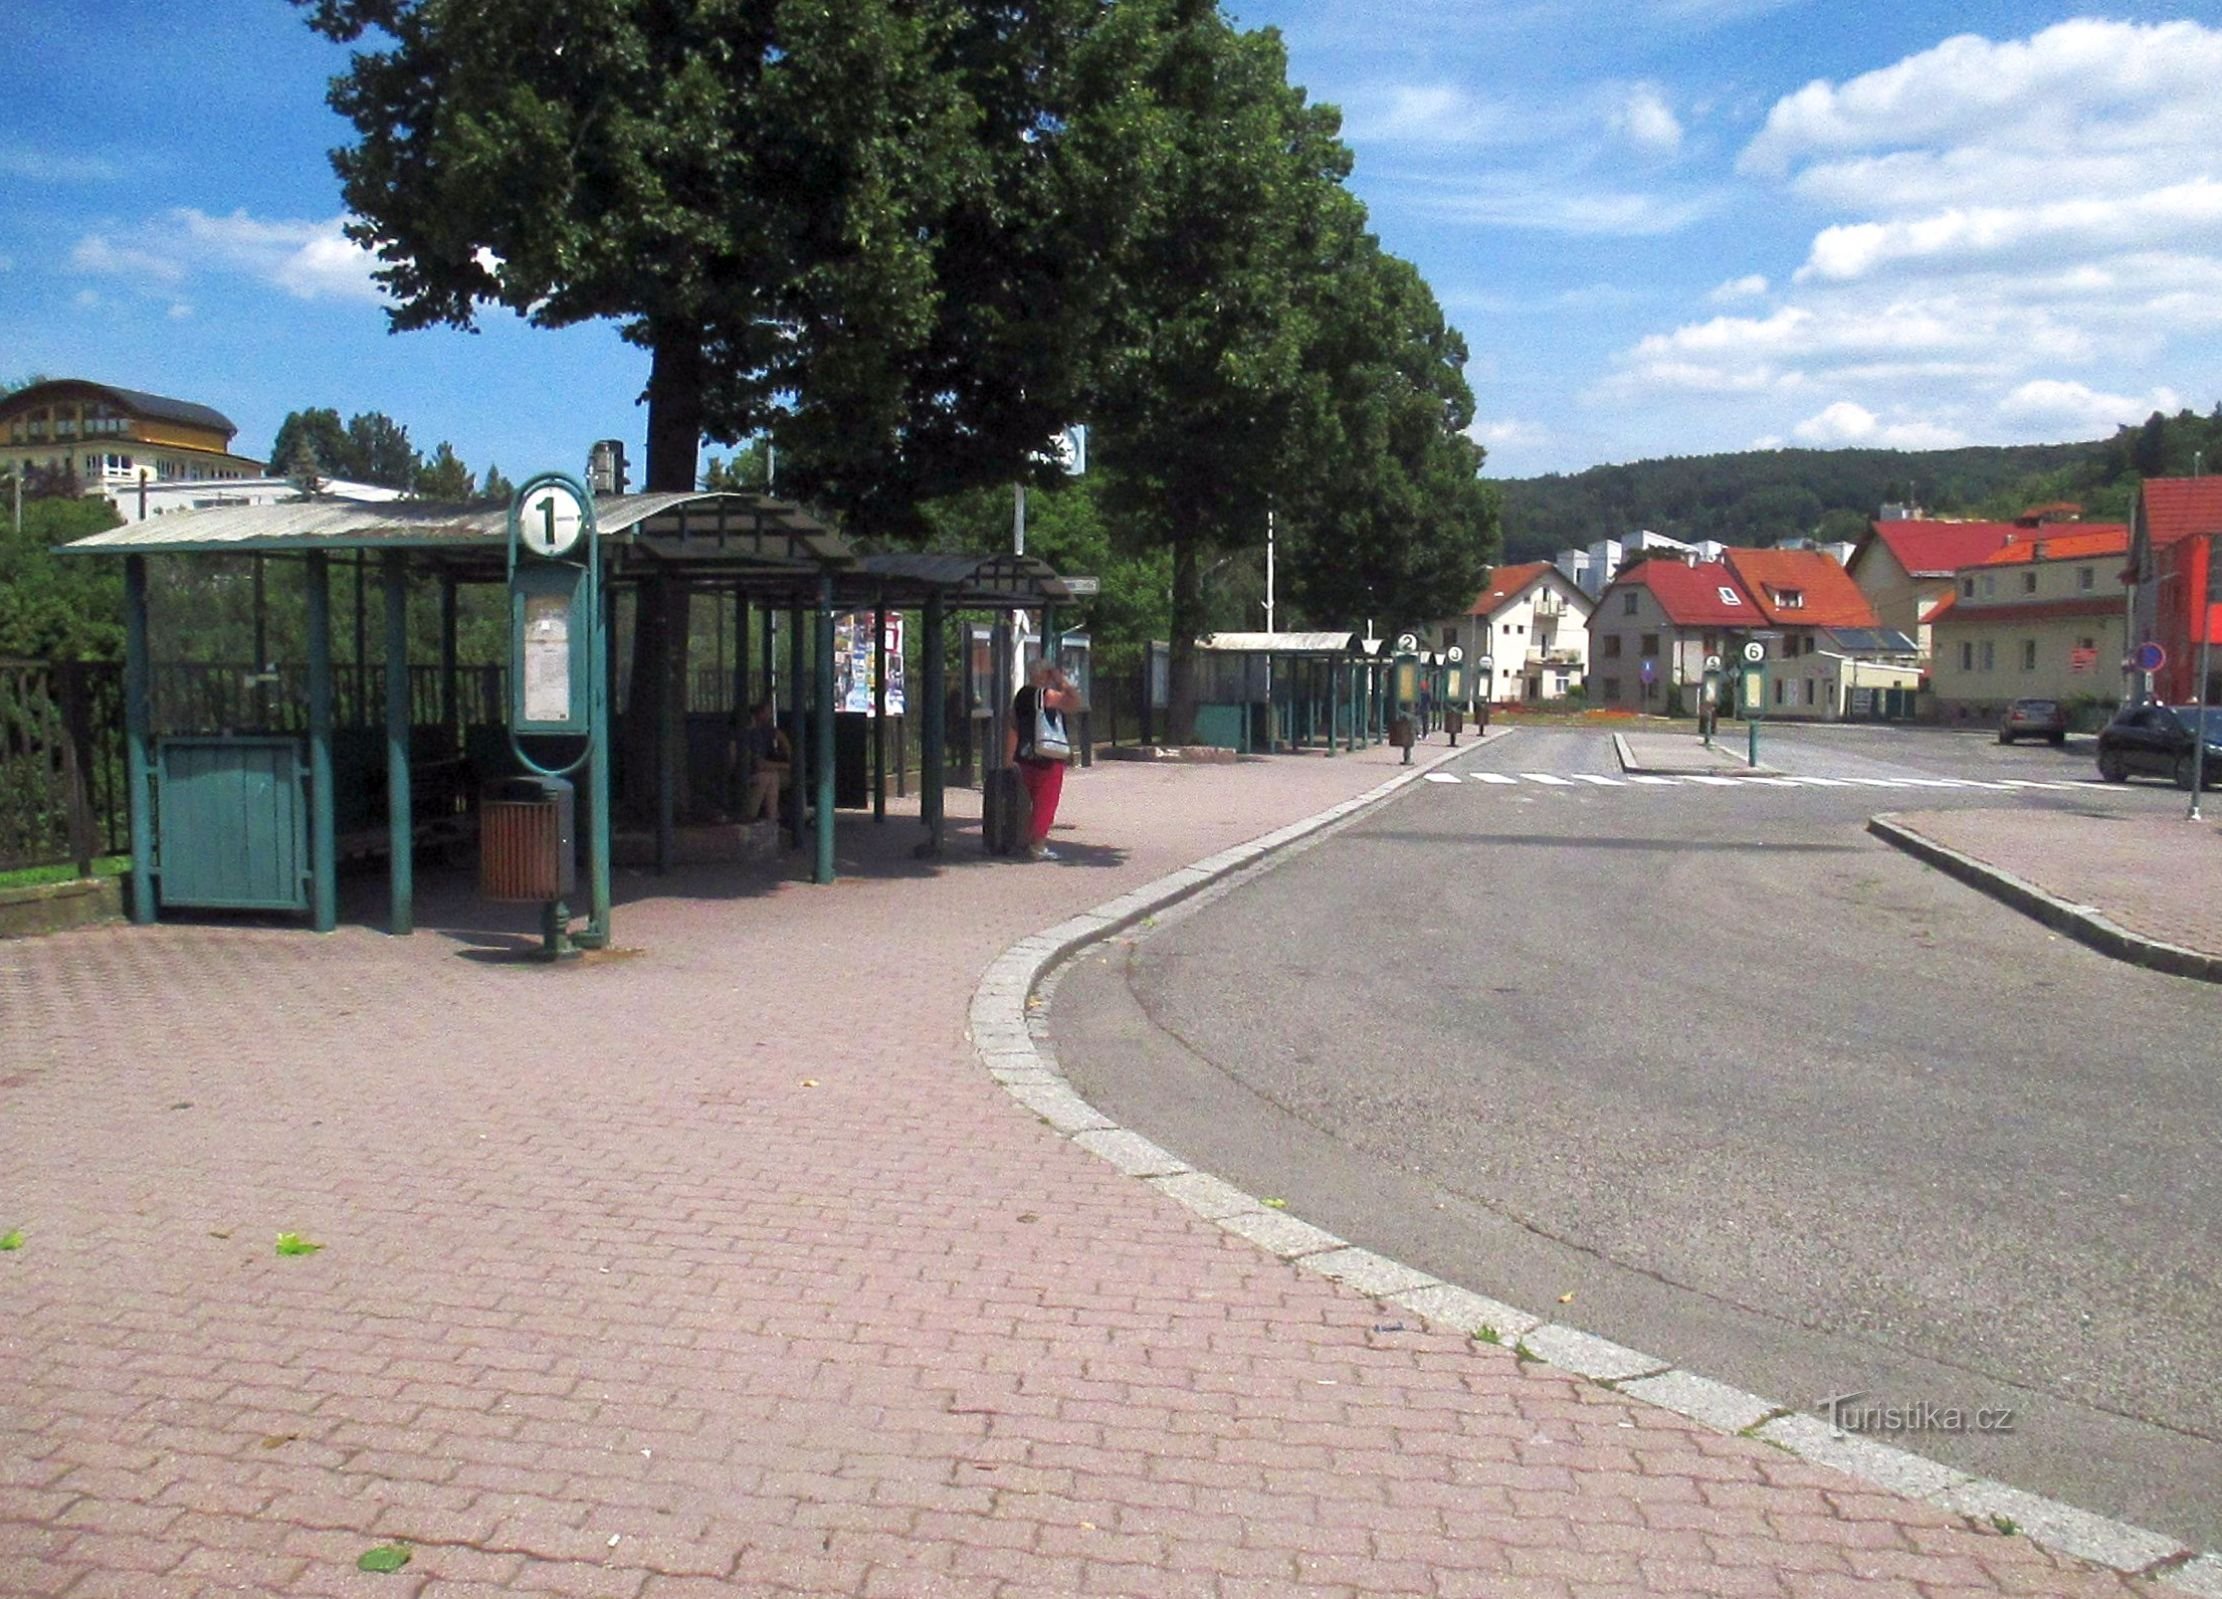 Luhačovice - busstation